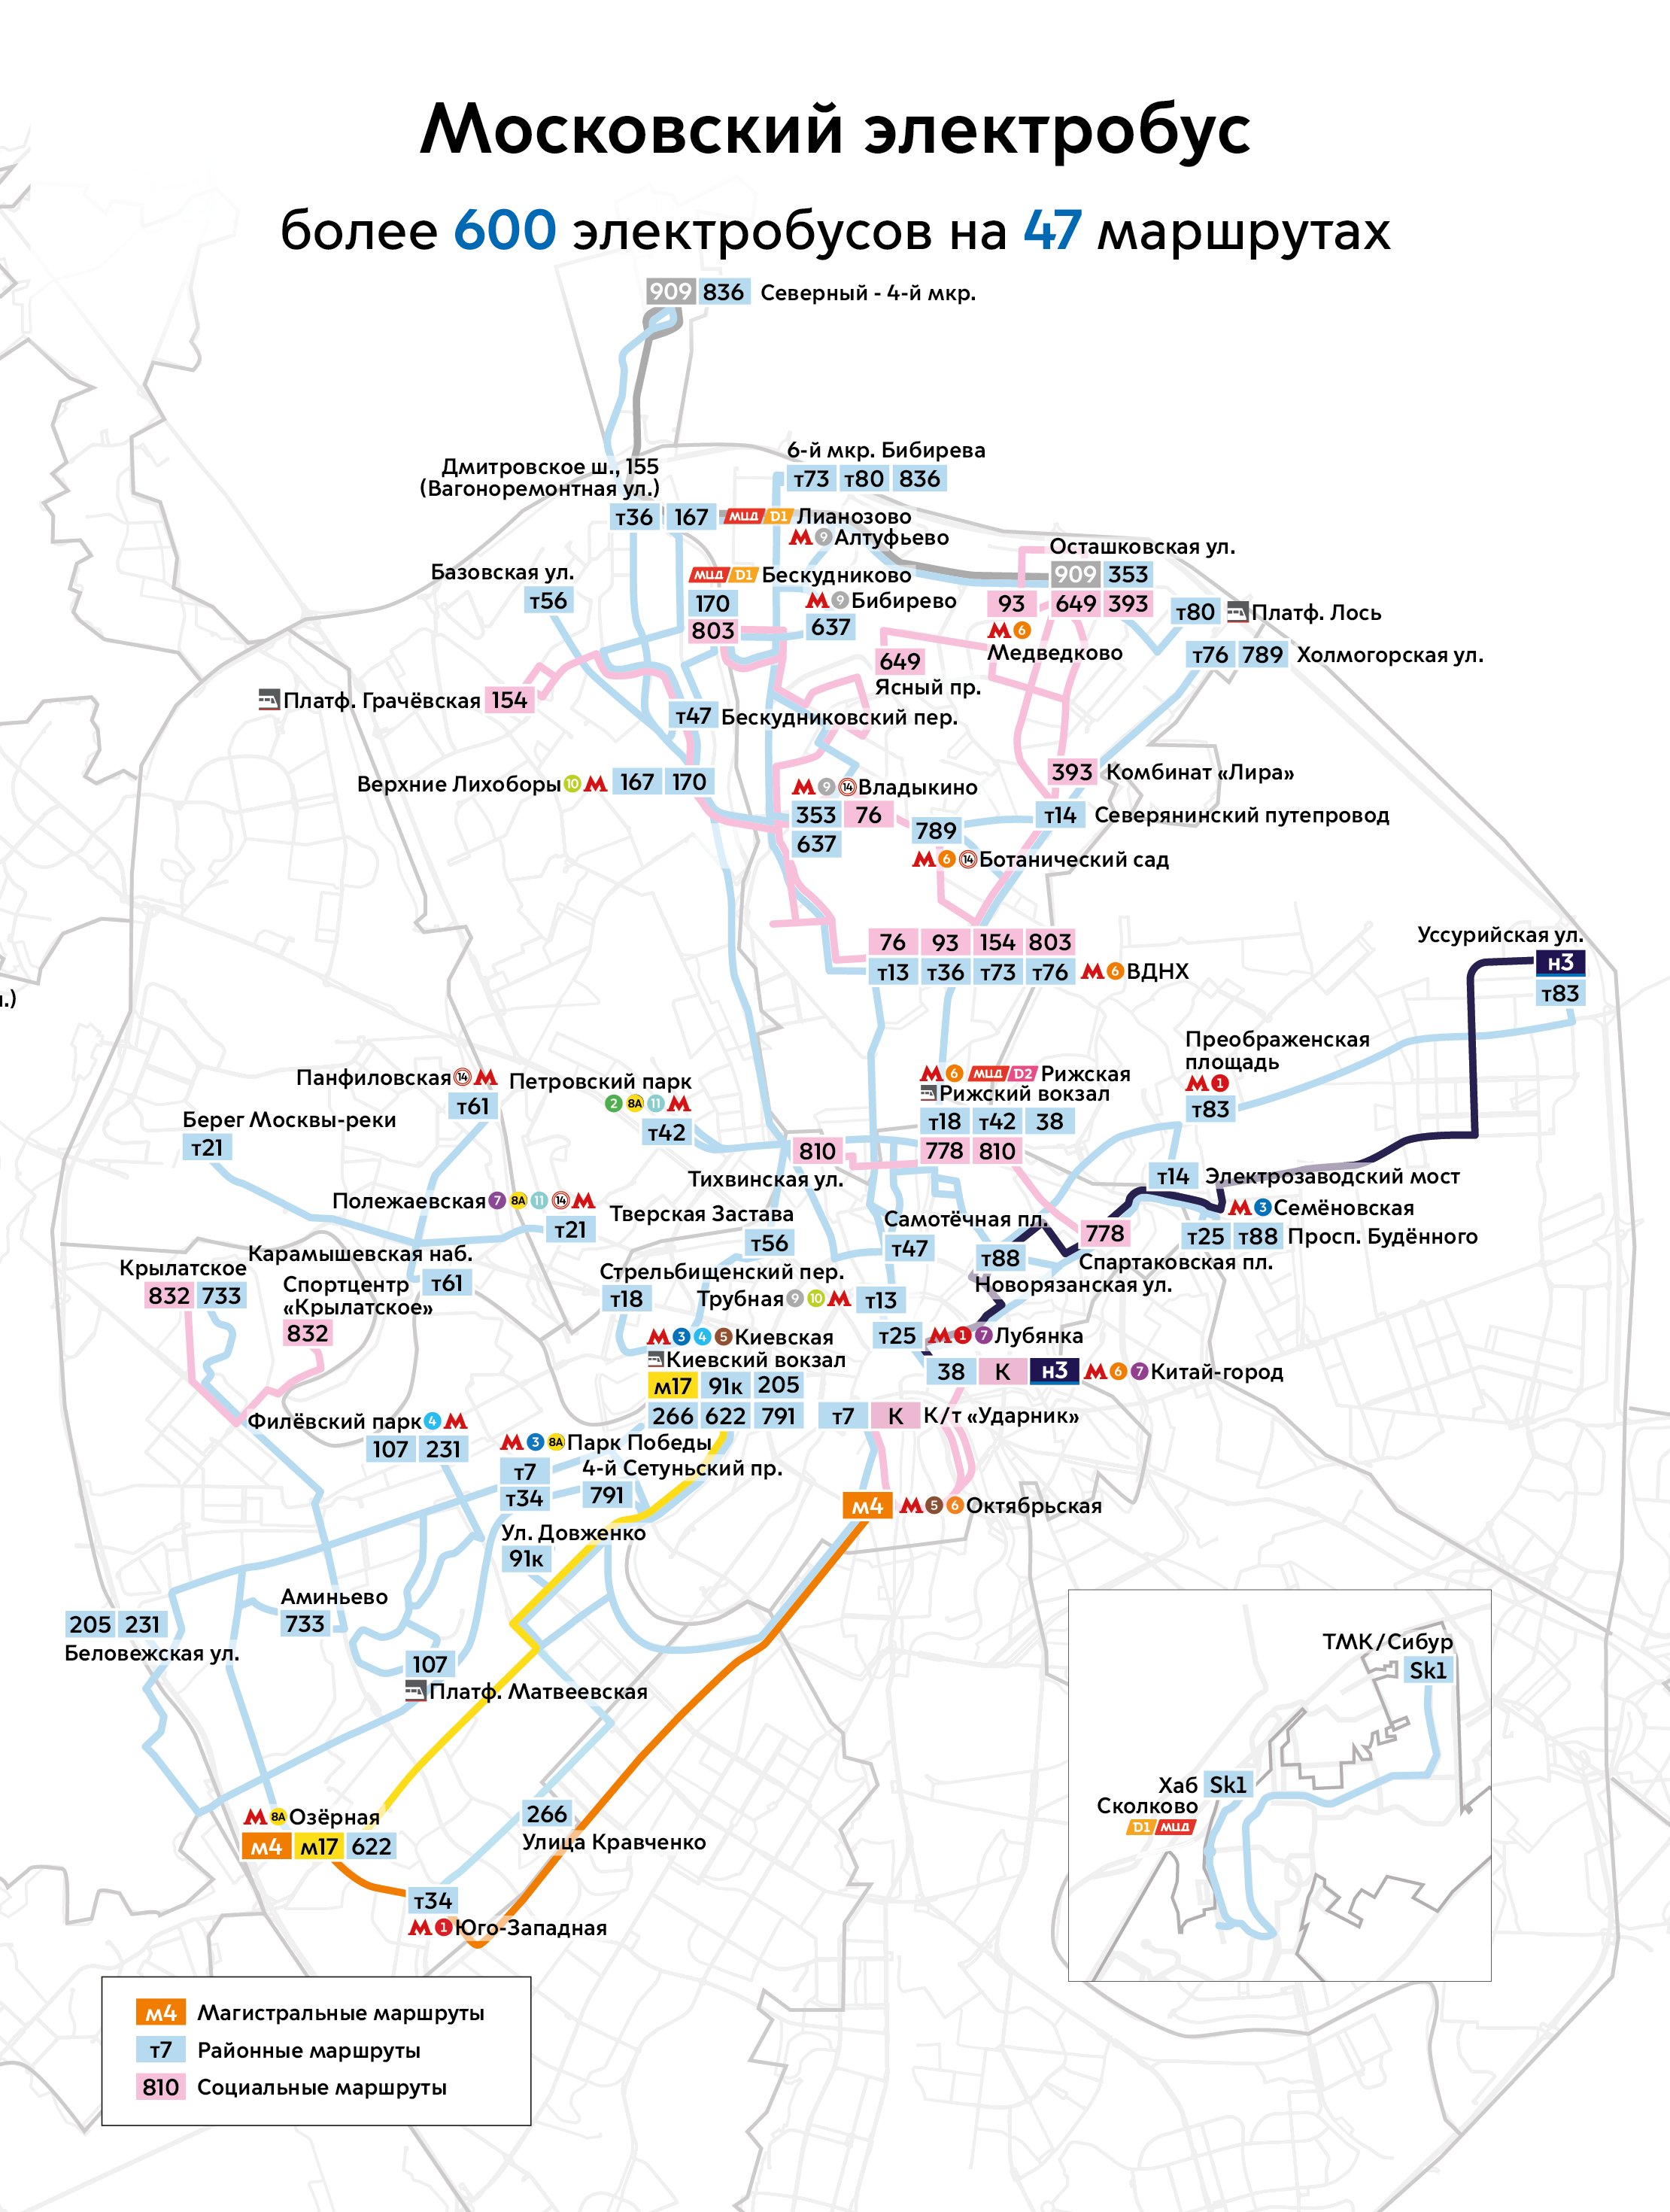 Moskva — Maps of Autonomous Electric Bus Lines